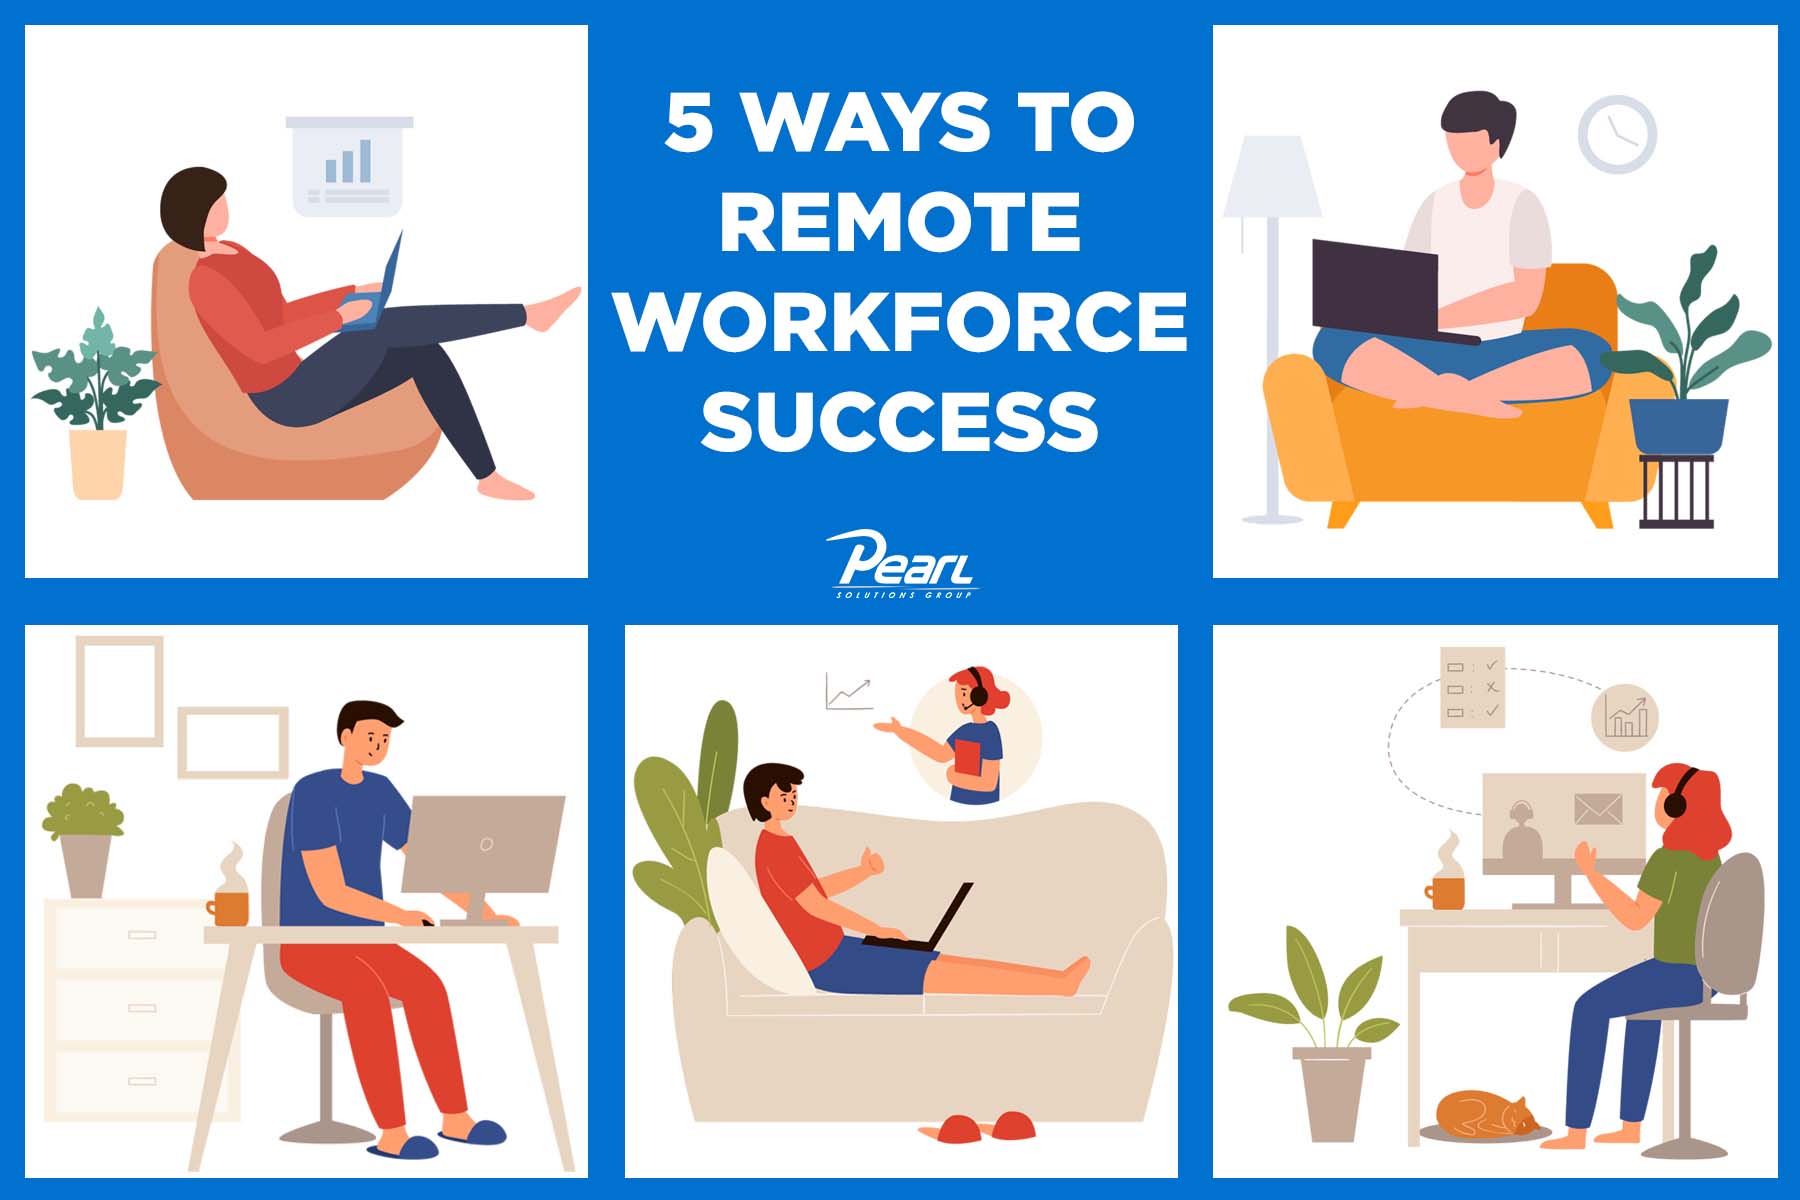 5 Ways to Remote Workforce Success